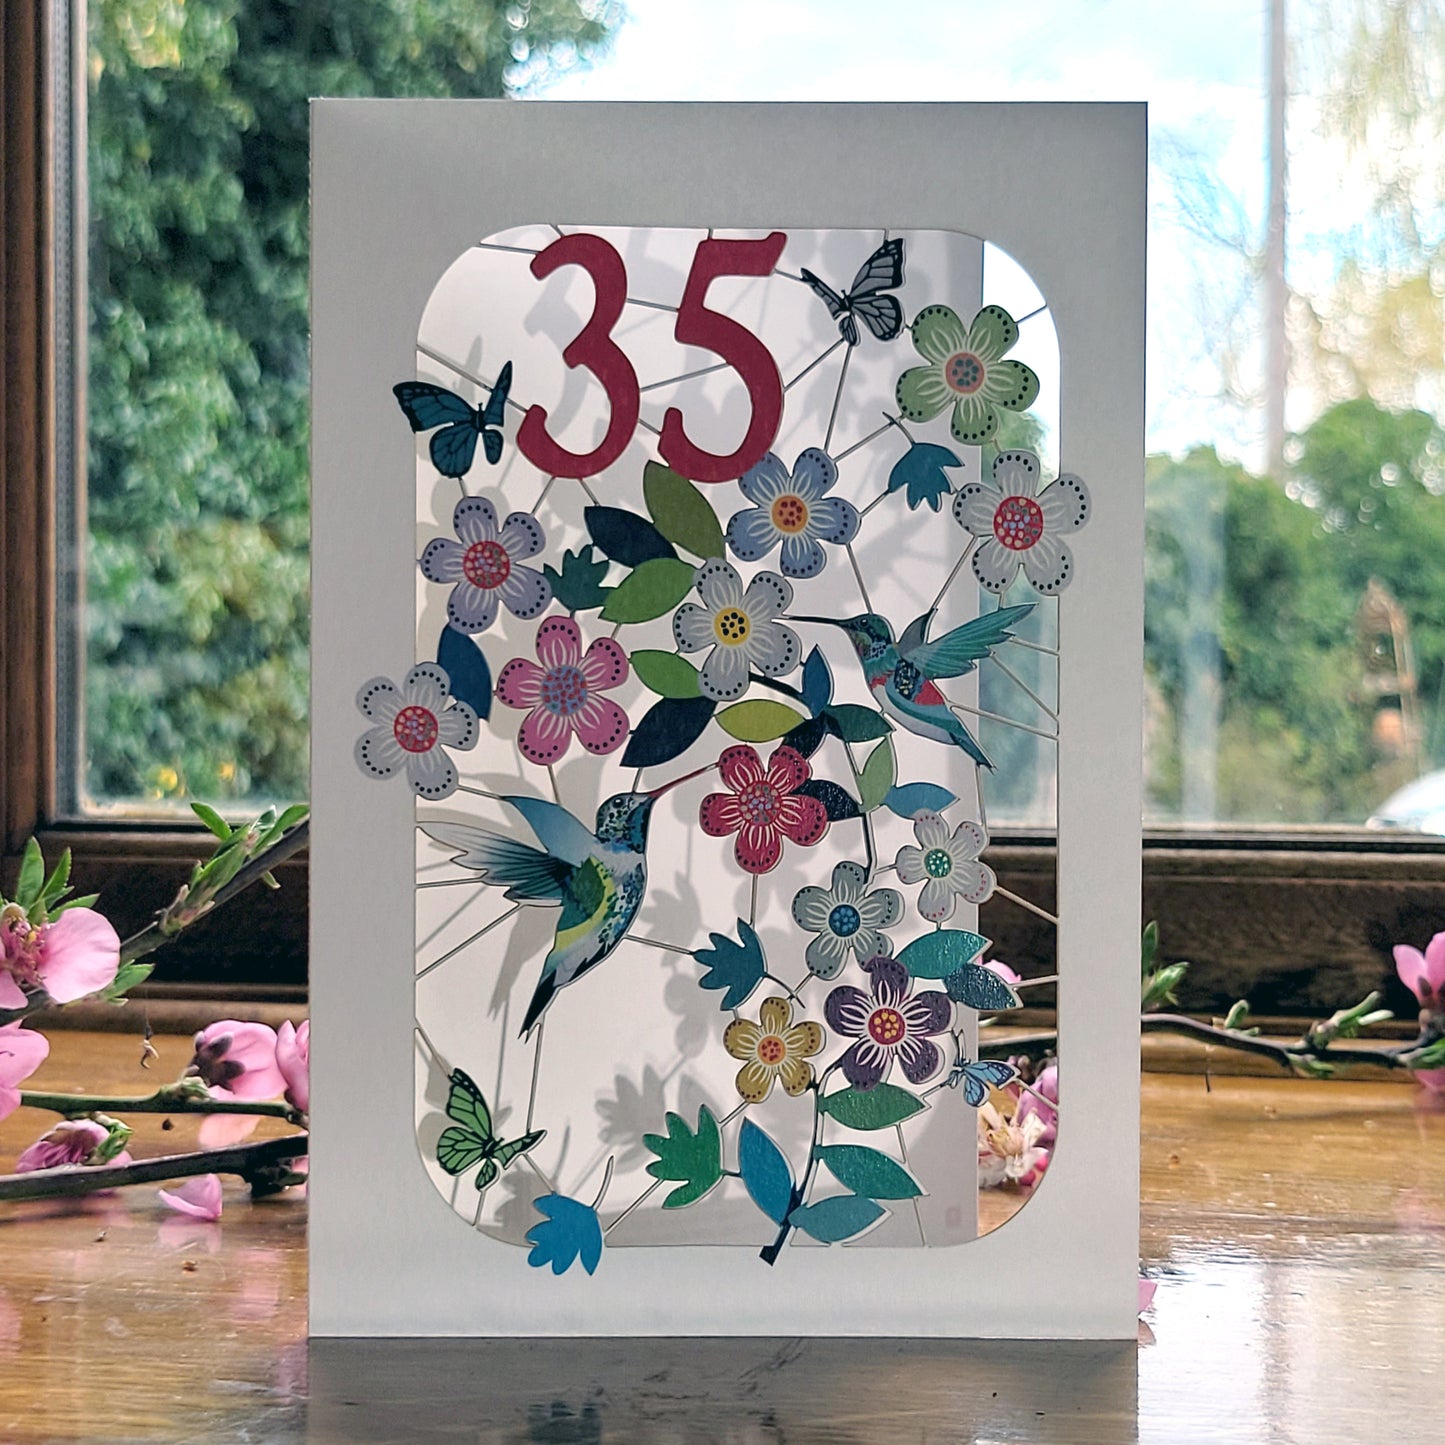 Age 35 Birthday Card, 35th Birthday Card, Humming Bird Card - GF035